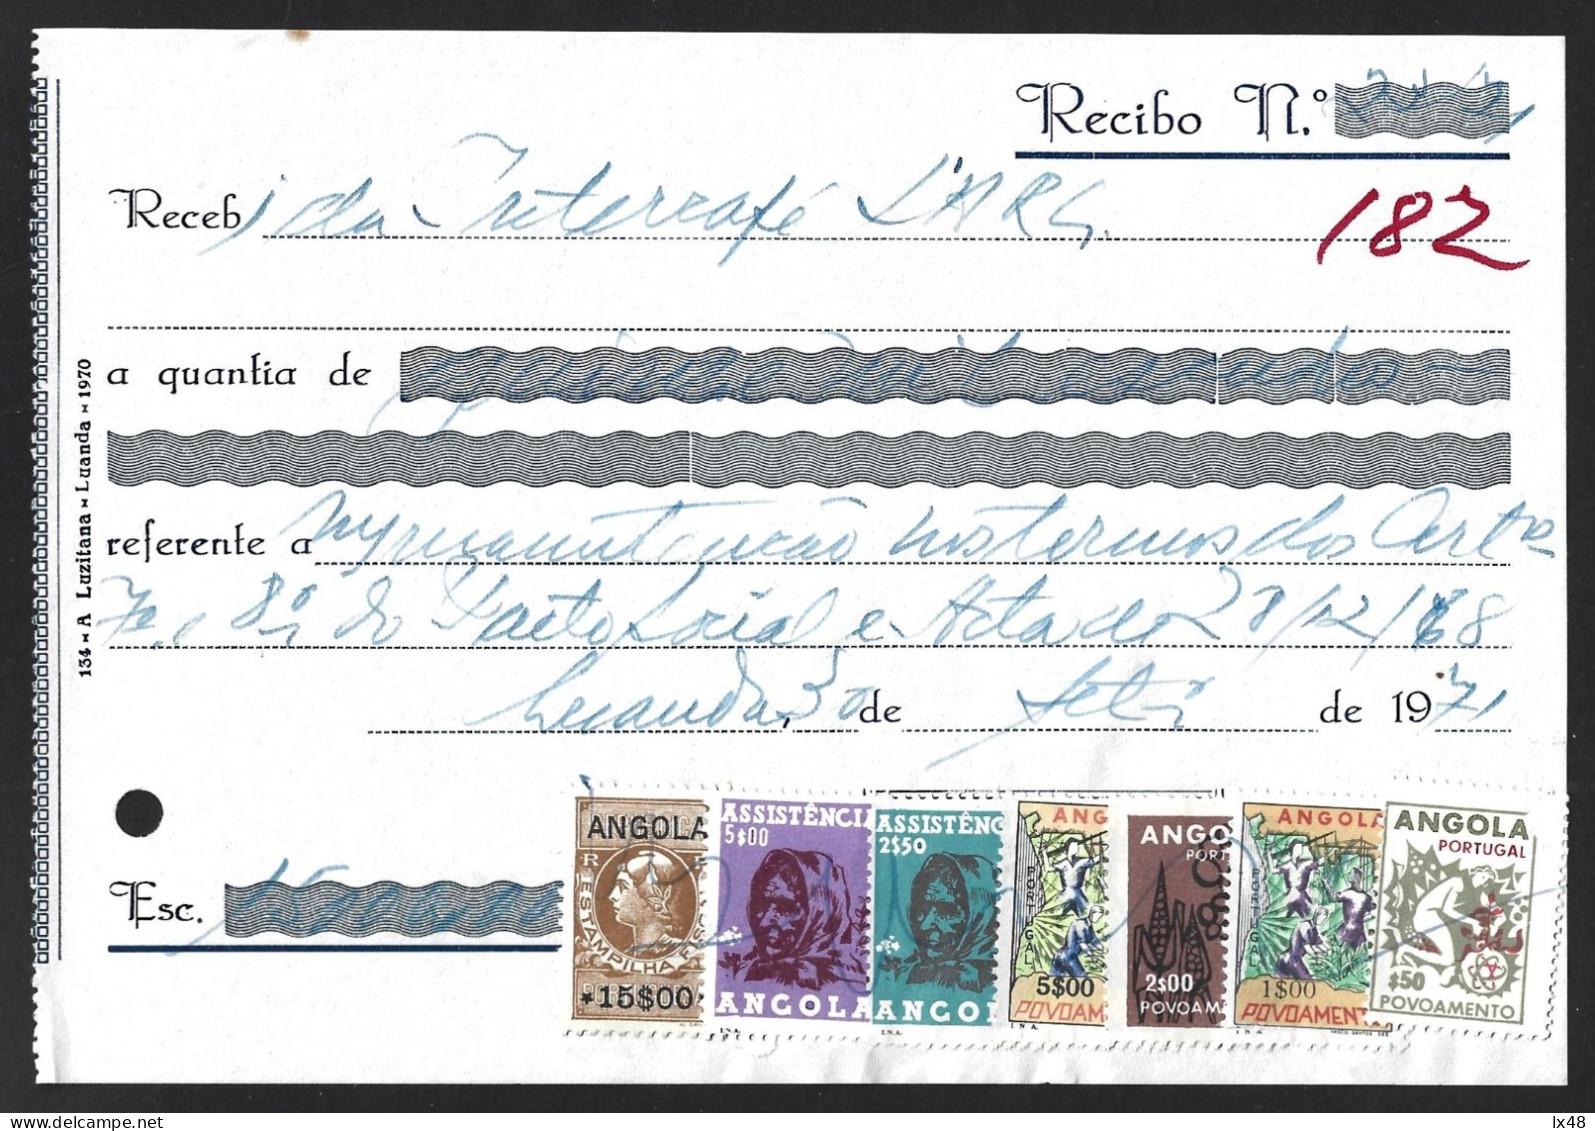 Recibo Emitido Em Luanda 1971 Com Stamp Fiscal 15$00 E 6 Stamps De Correio Usados Como Fiscais Da Assistência E Povoamen - Covers & Documents